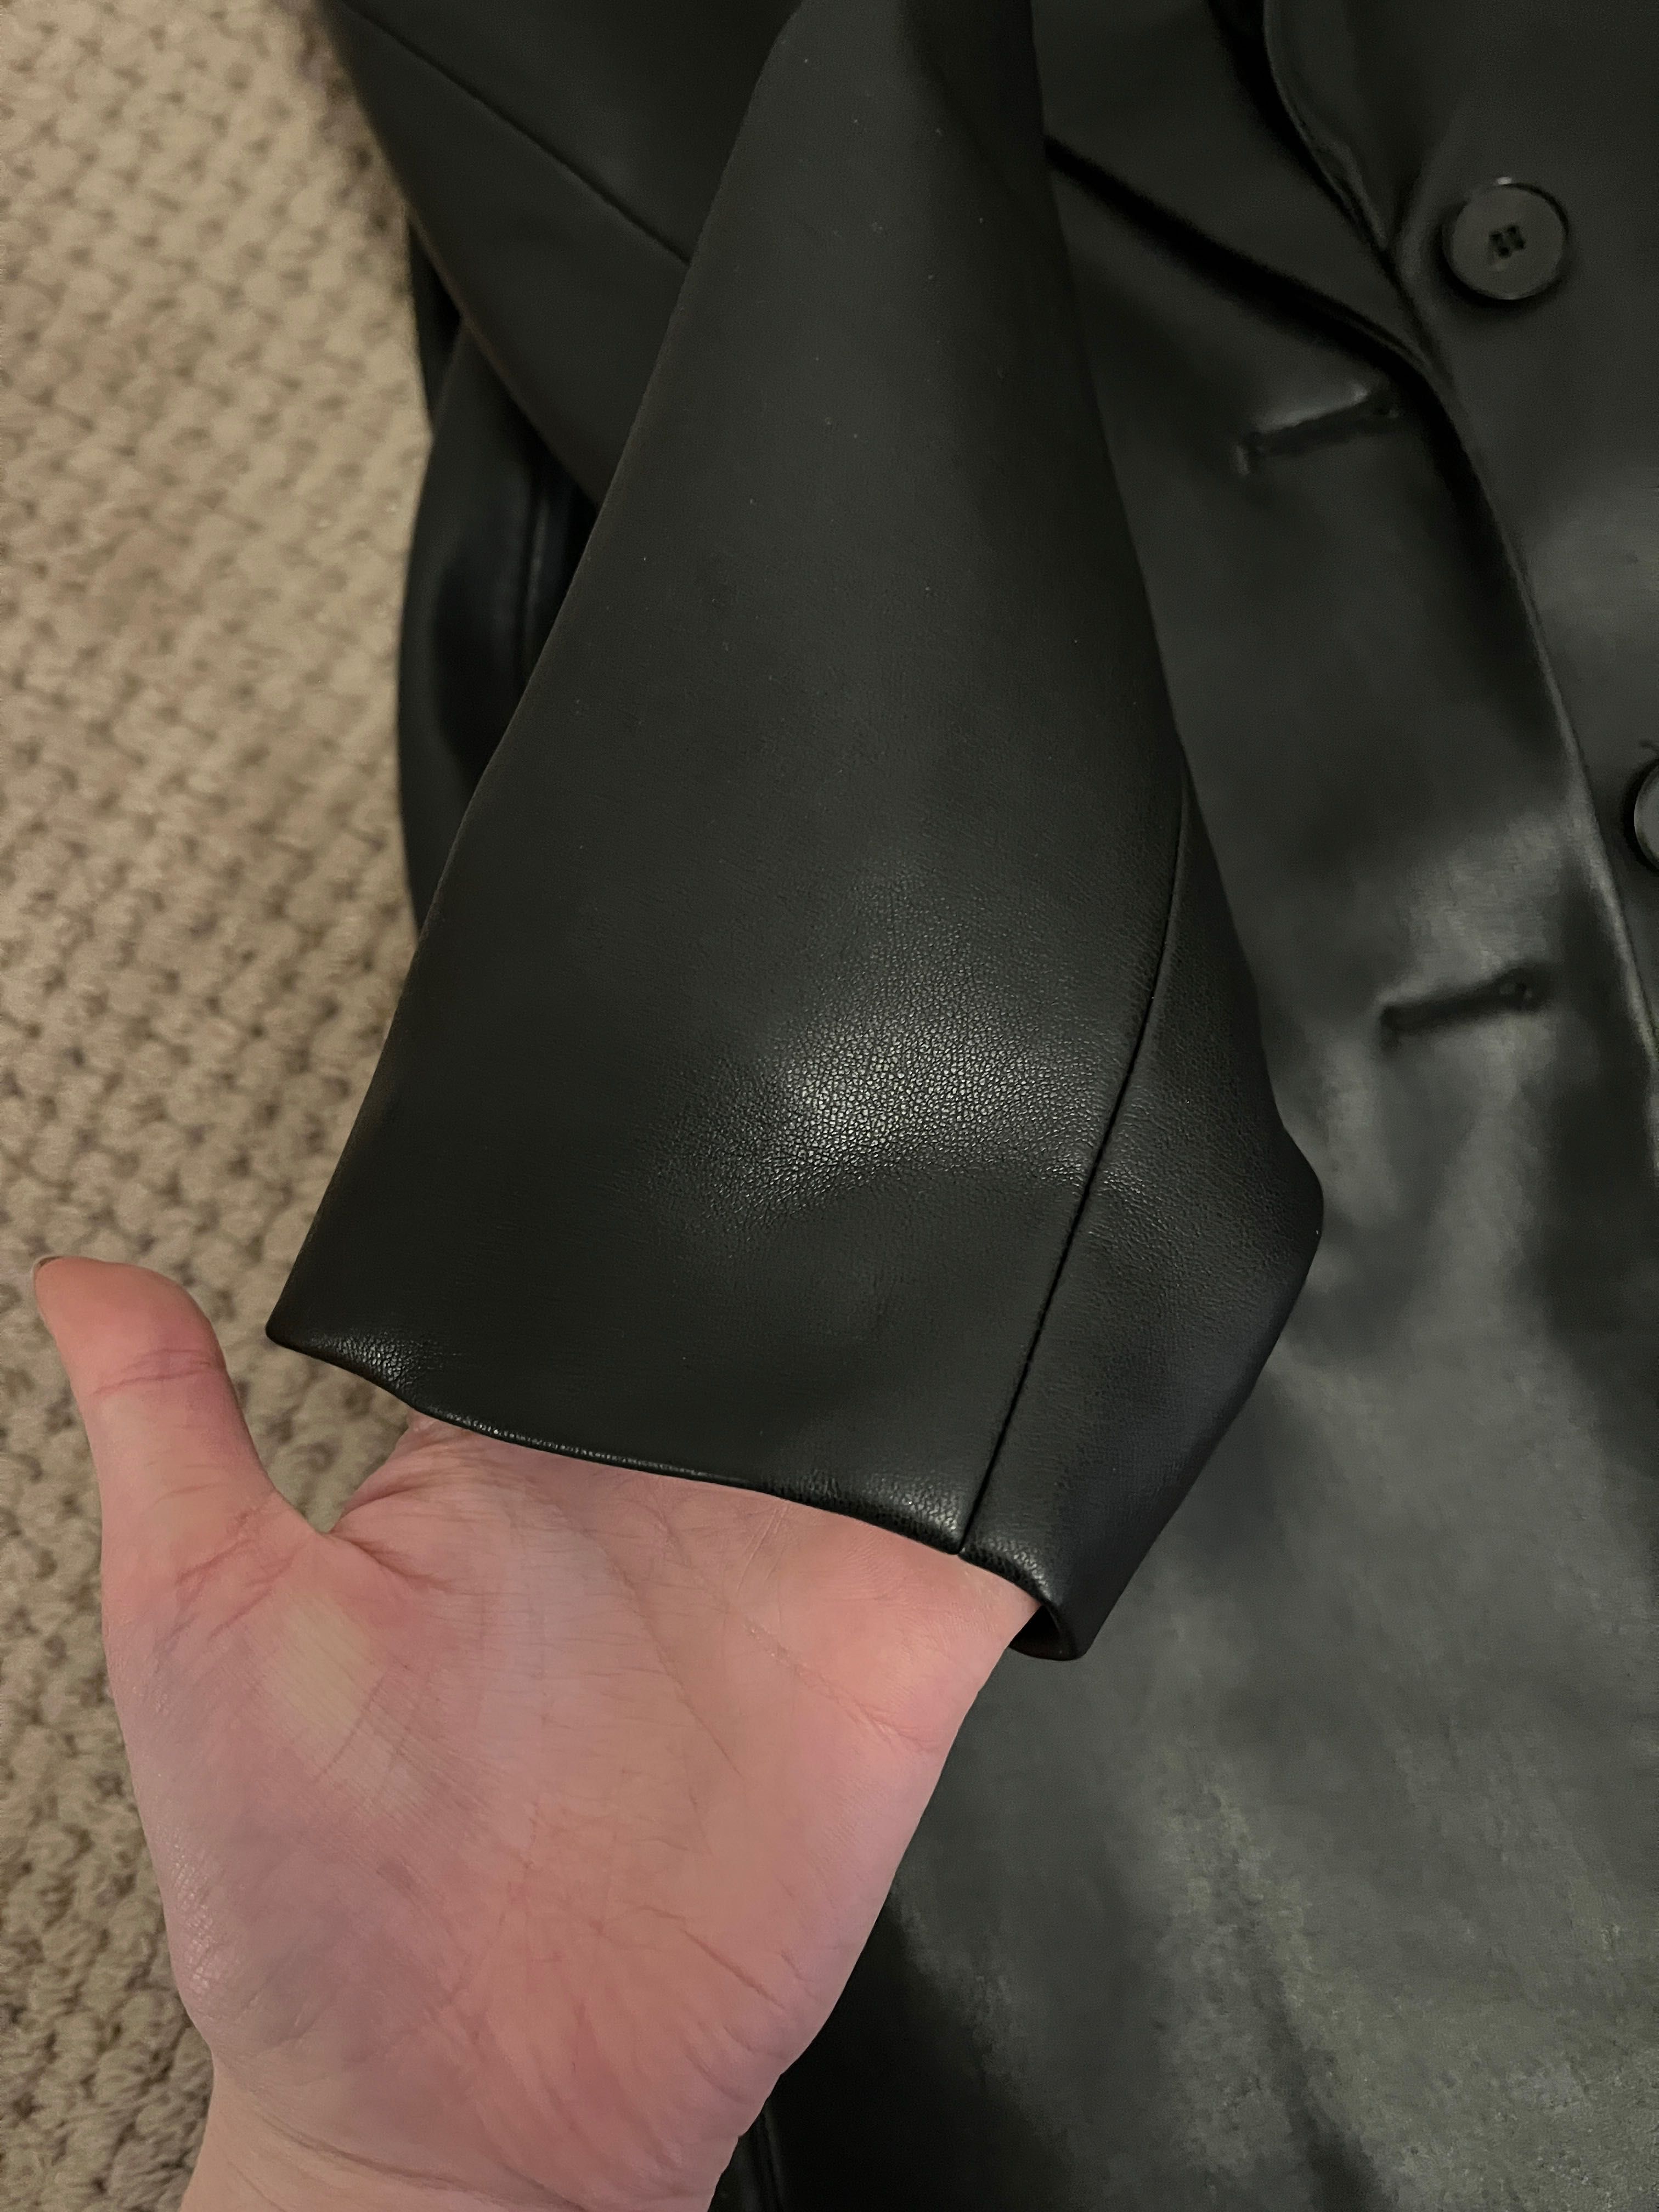 Шкіряний піджак кожаный черный пиджак жакет